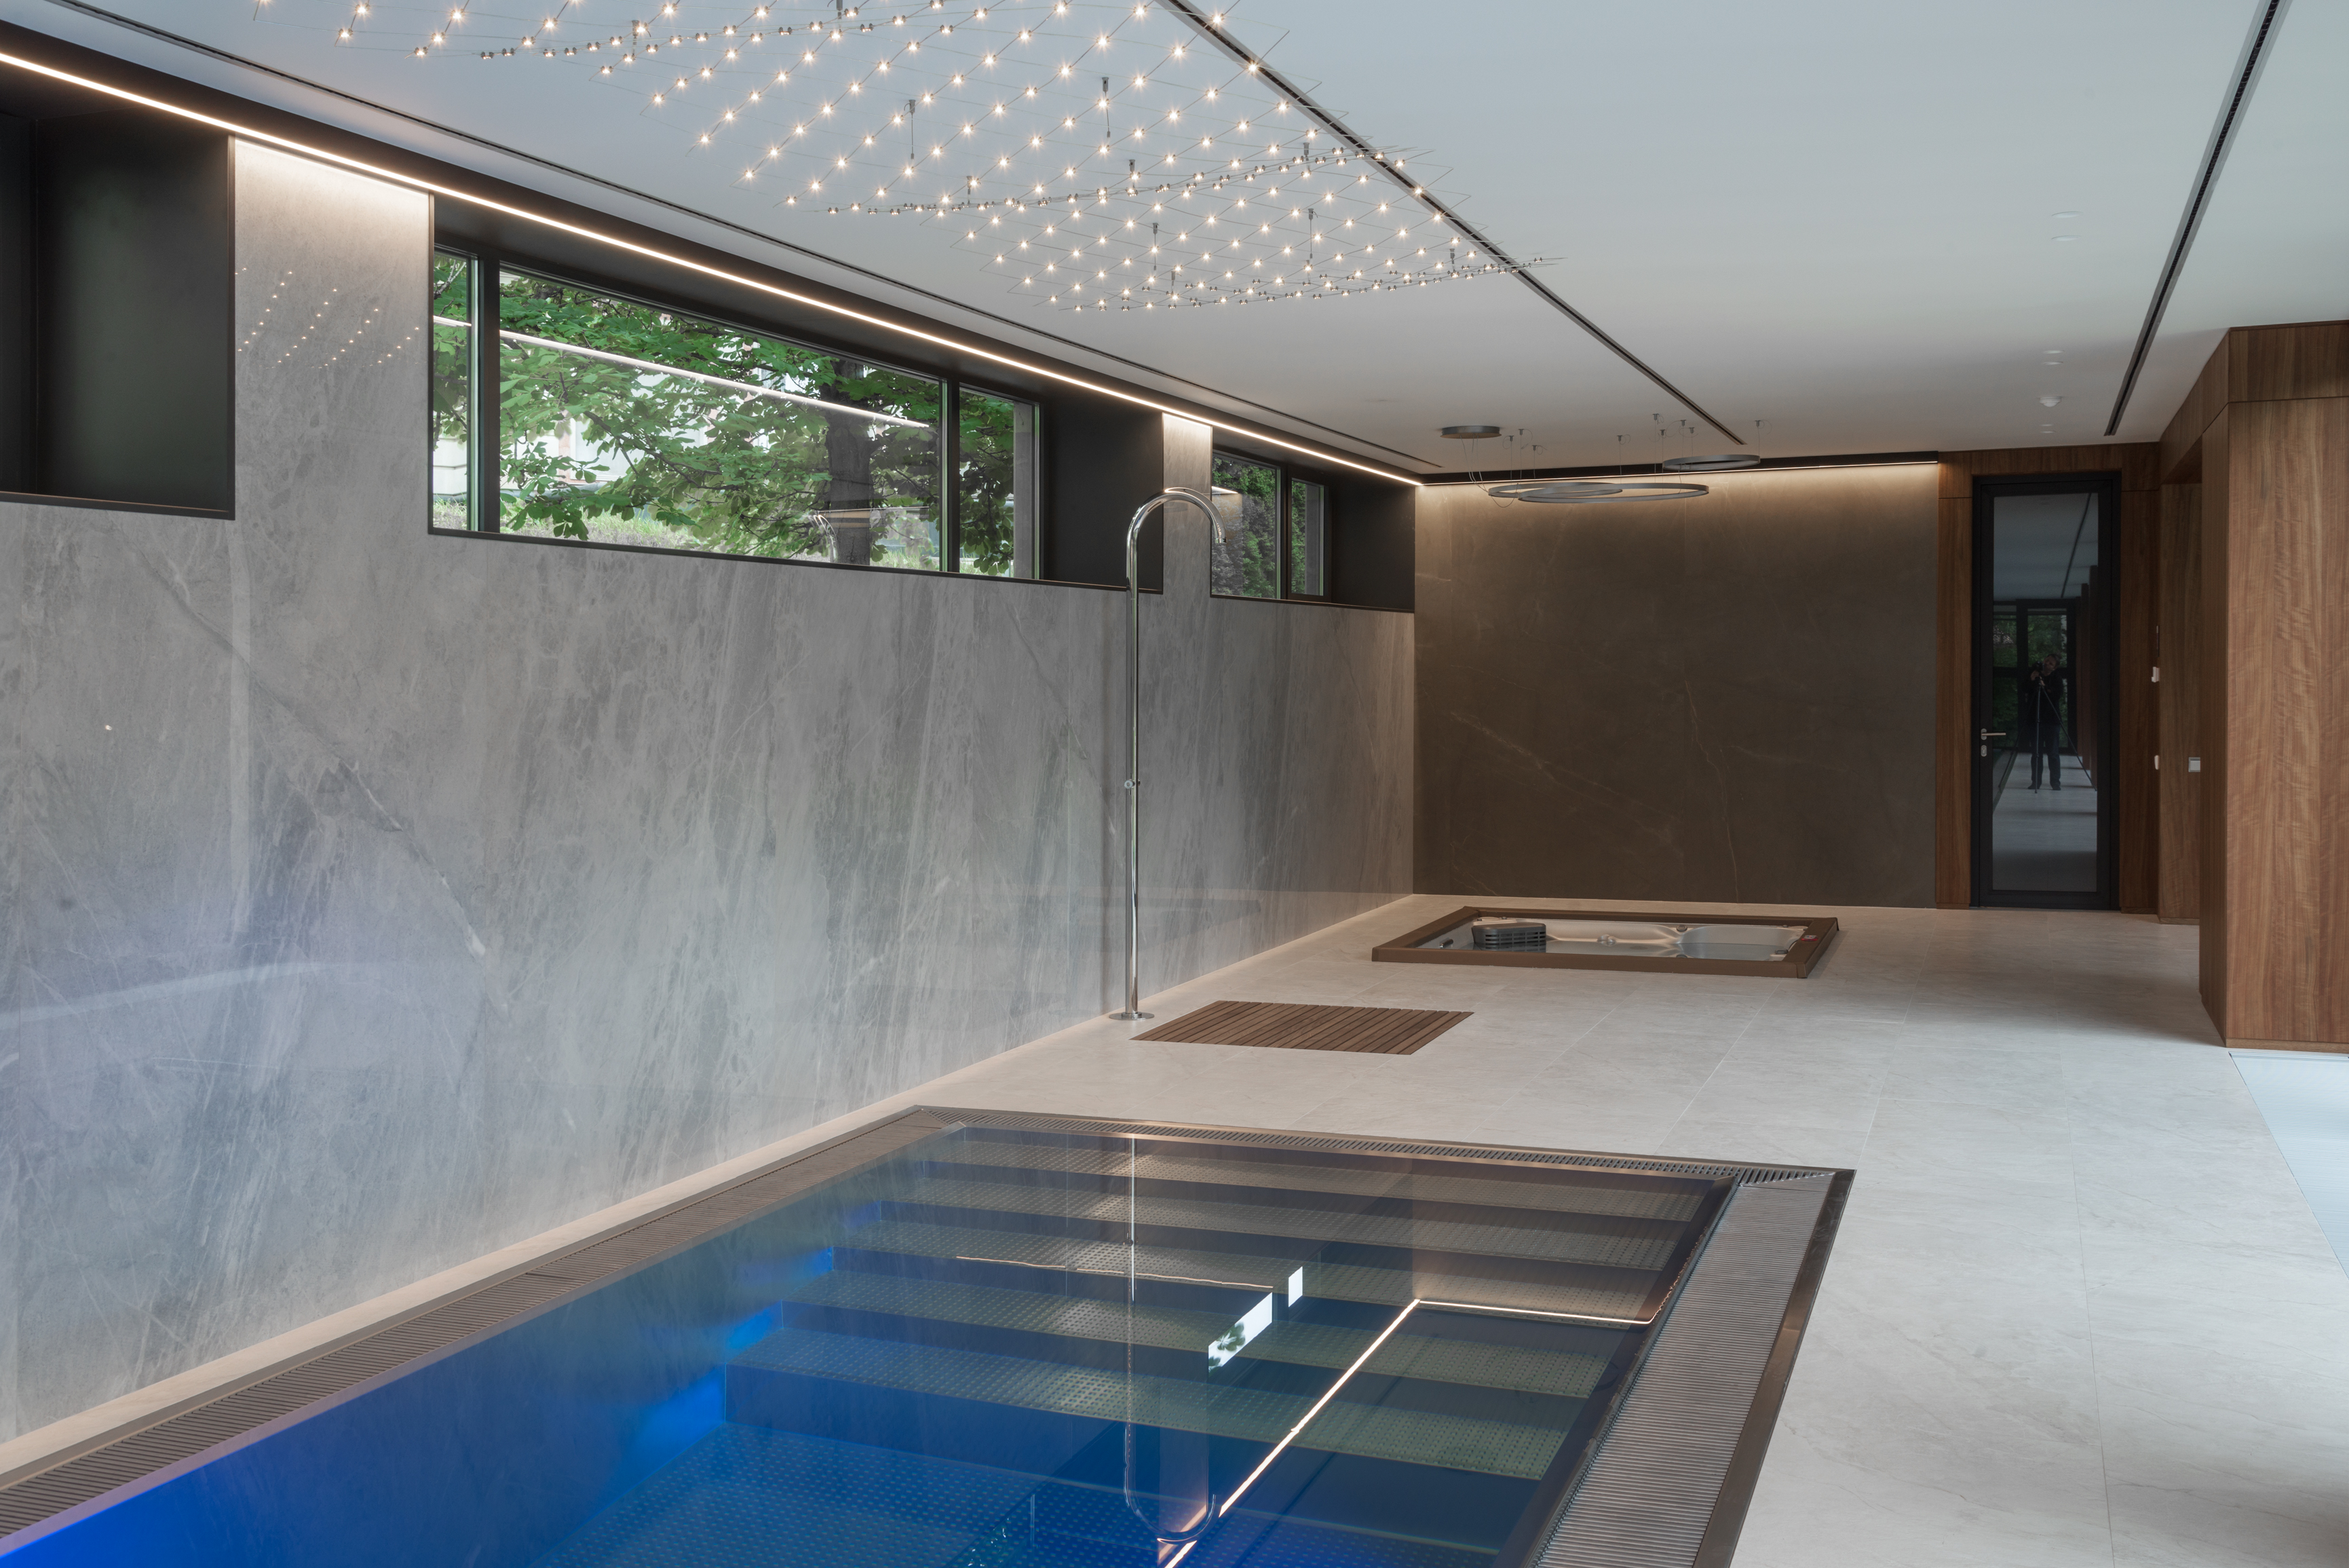 Private Design-Innen-Wellness mit einem Pool von IMAGINOX auf dem Niveau der Terrasse